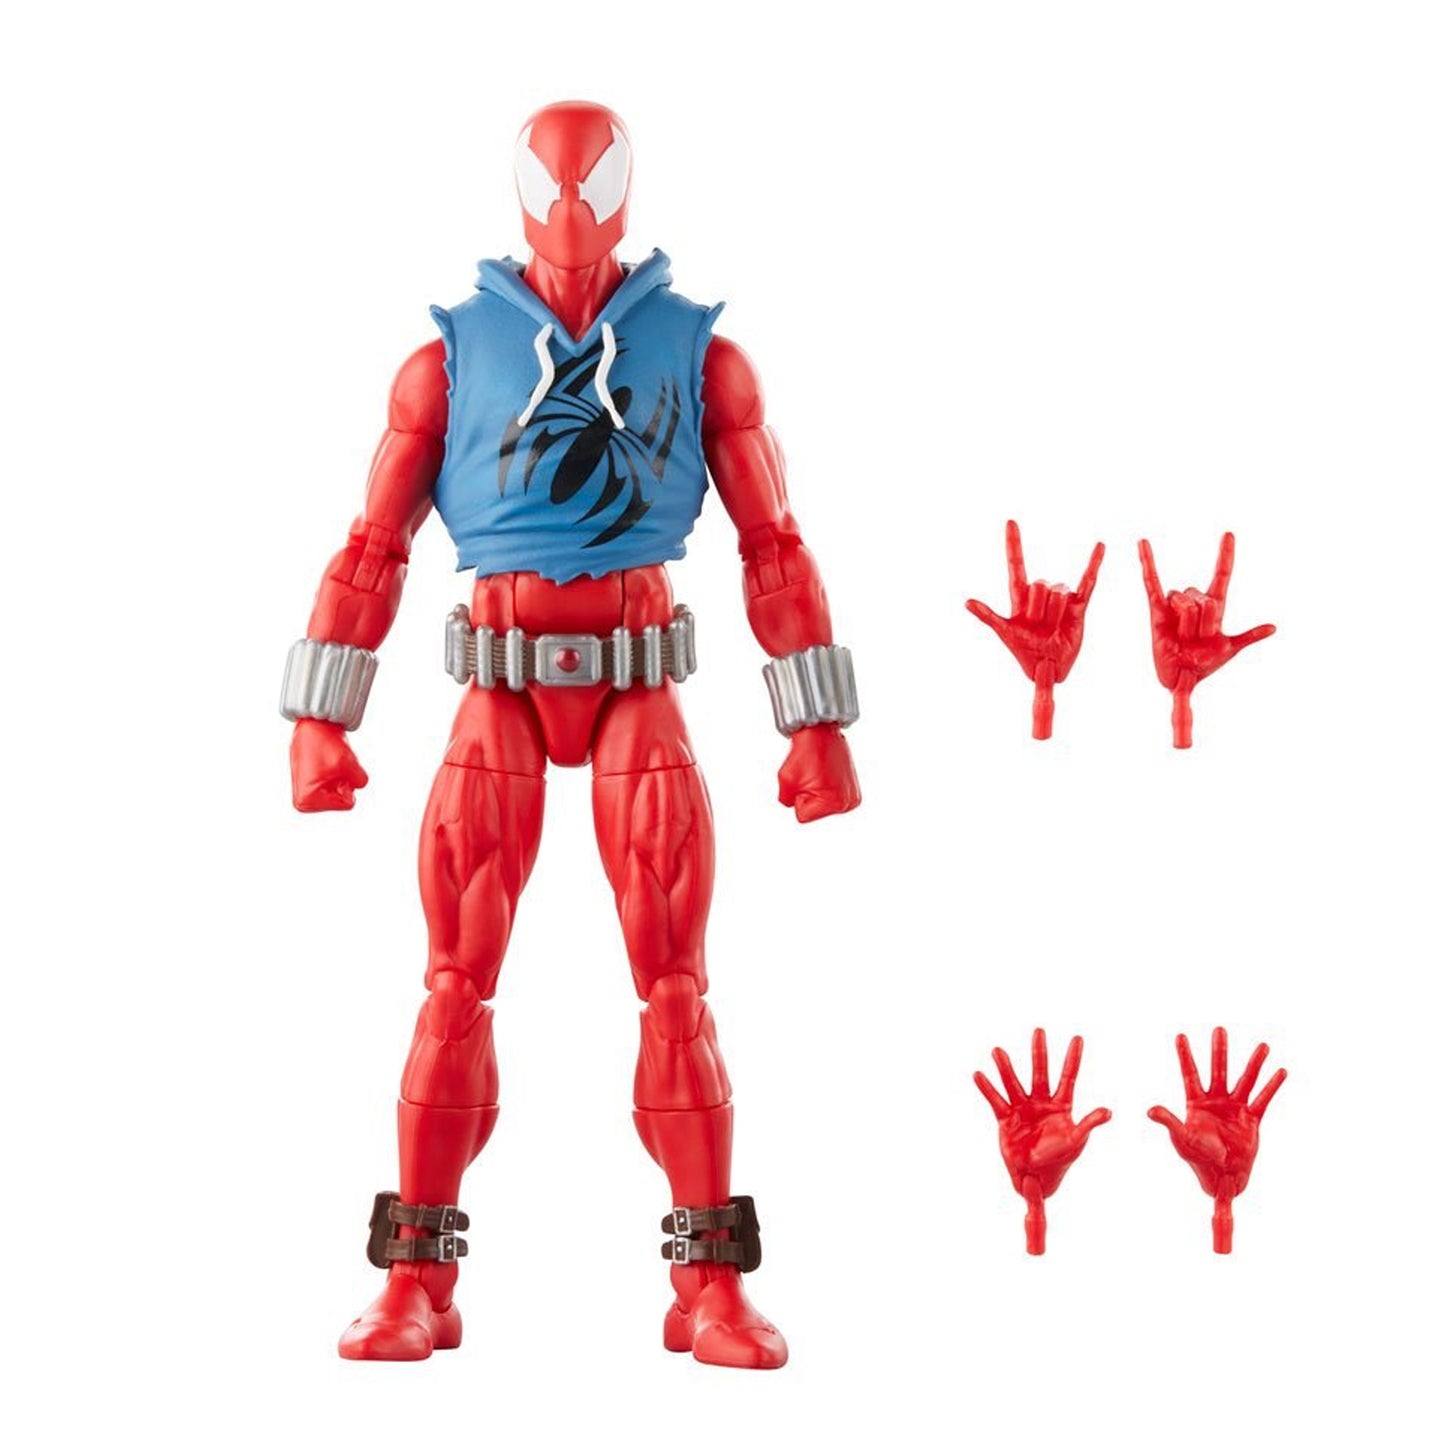 Marvel Legends Scarlet Spider (Upgraded)